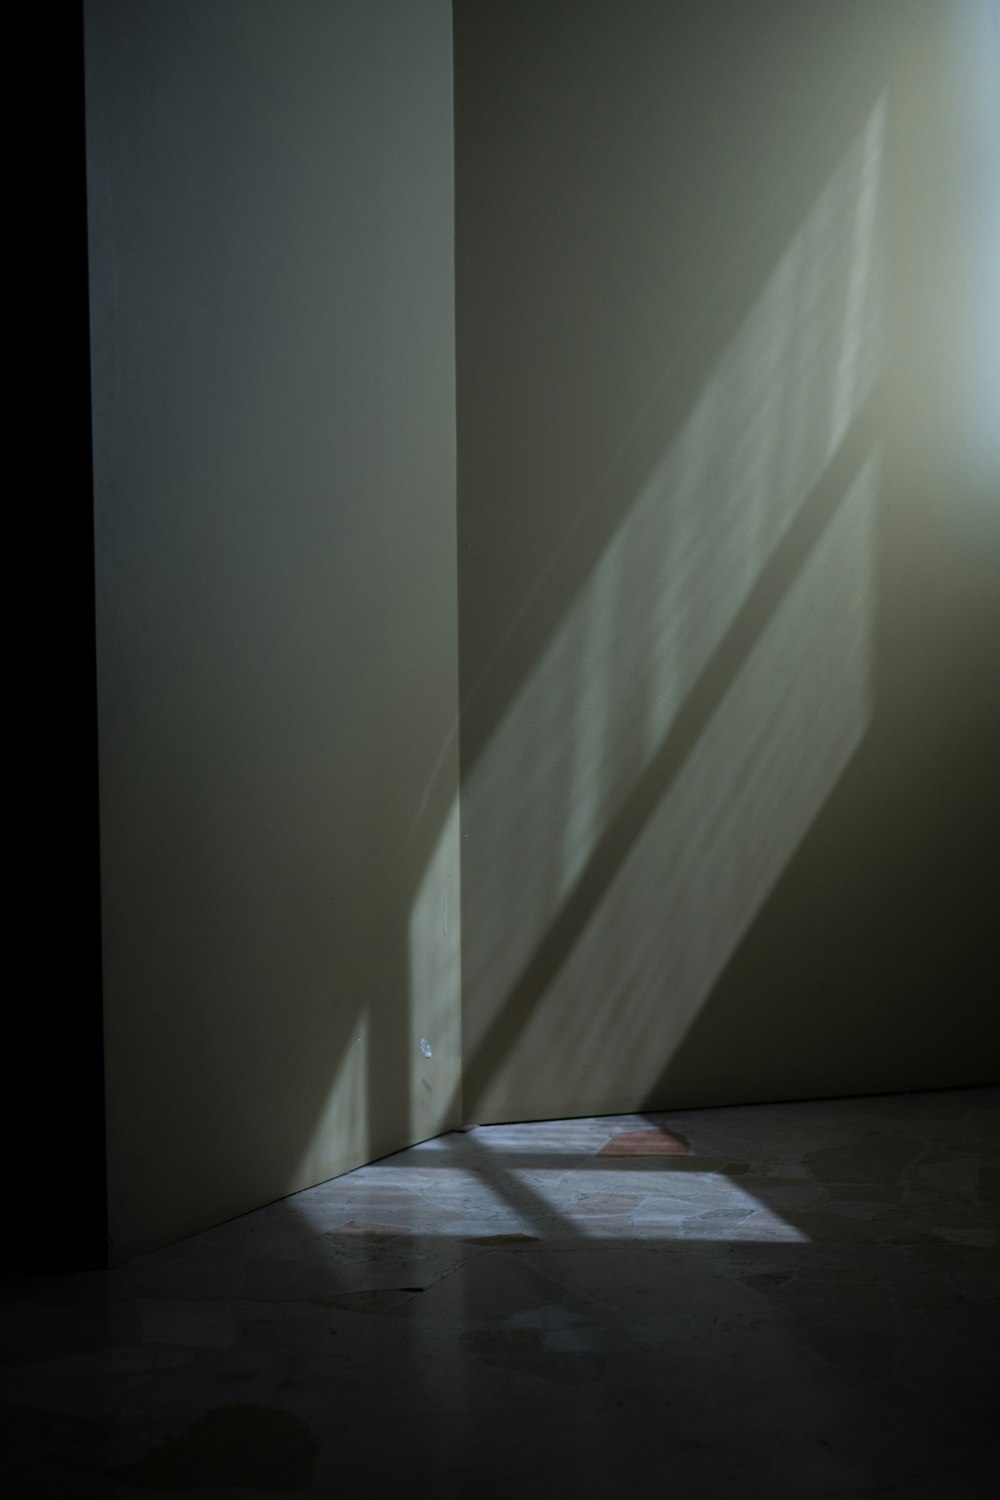 窓から差し込む光が壁に映る影。